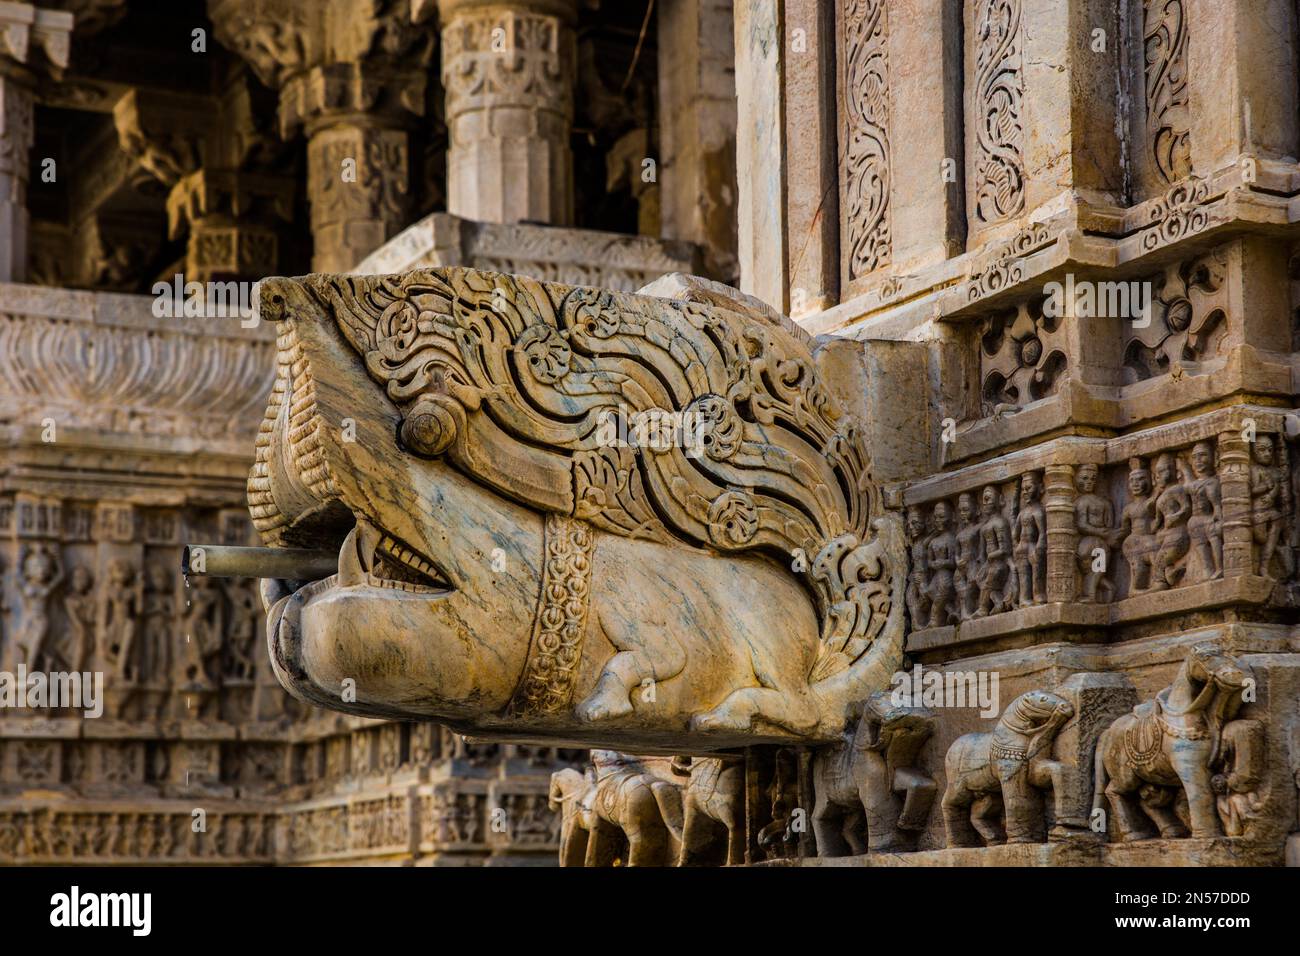 Artful gargoyle, Jagdish Temple, Udaipur, Udaipur, Rajasthan, India Stock Photo